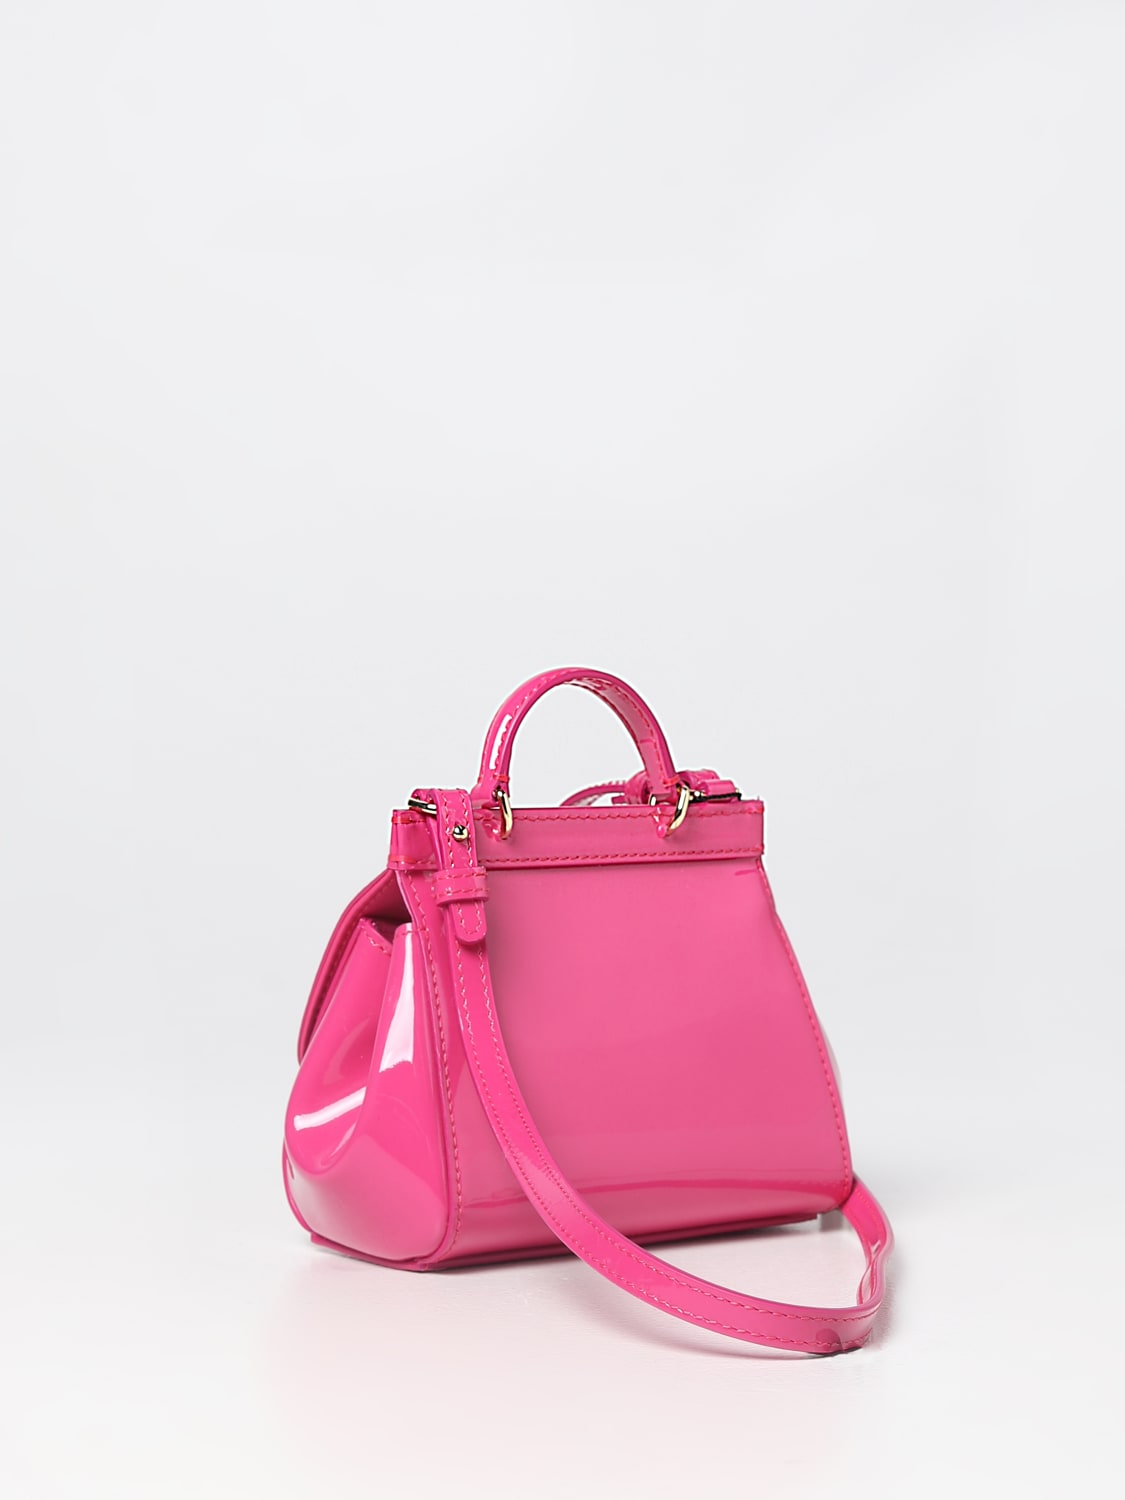 Dolce & Gabbana Blue Denim Pink Leather Sicily Shoulder Satchel Bag